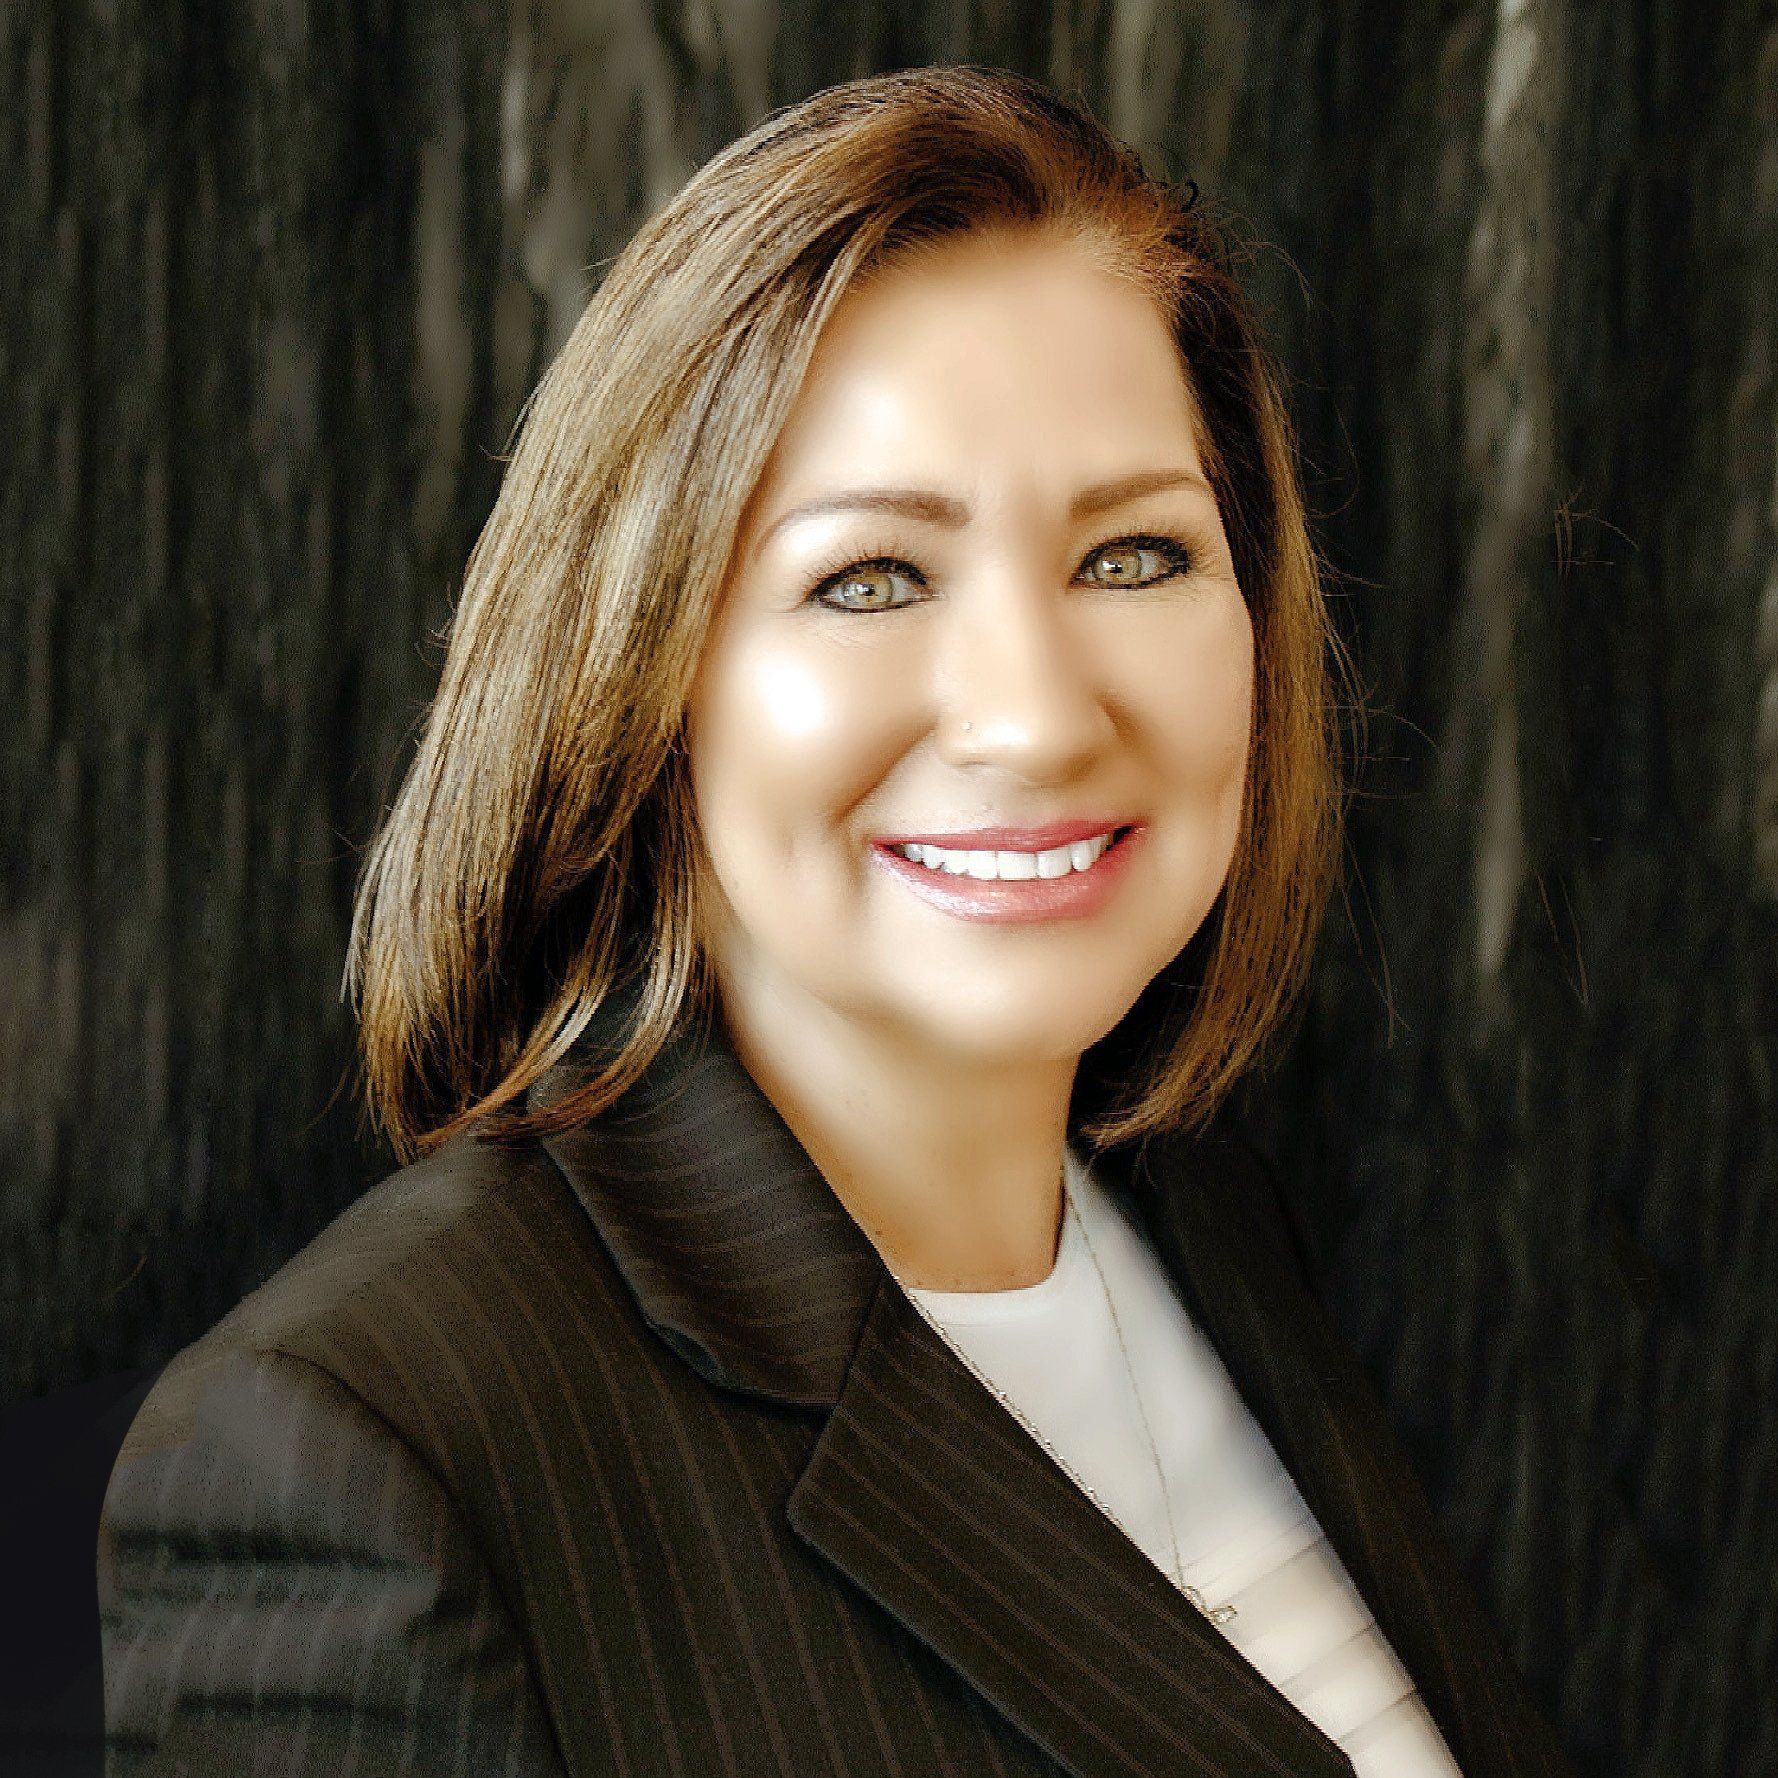 Dr. Susan Flores